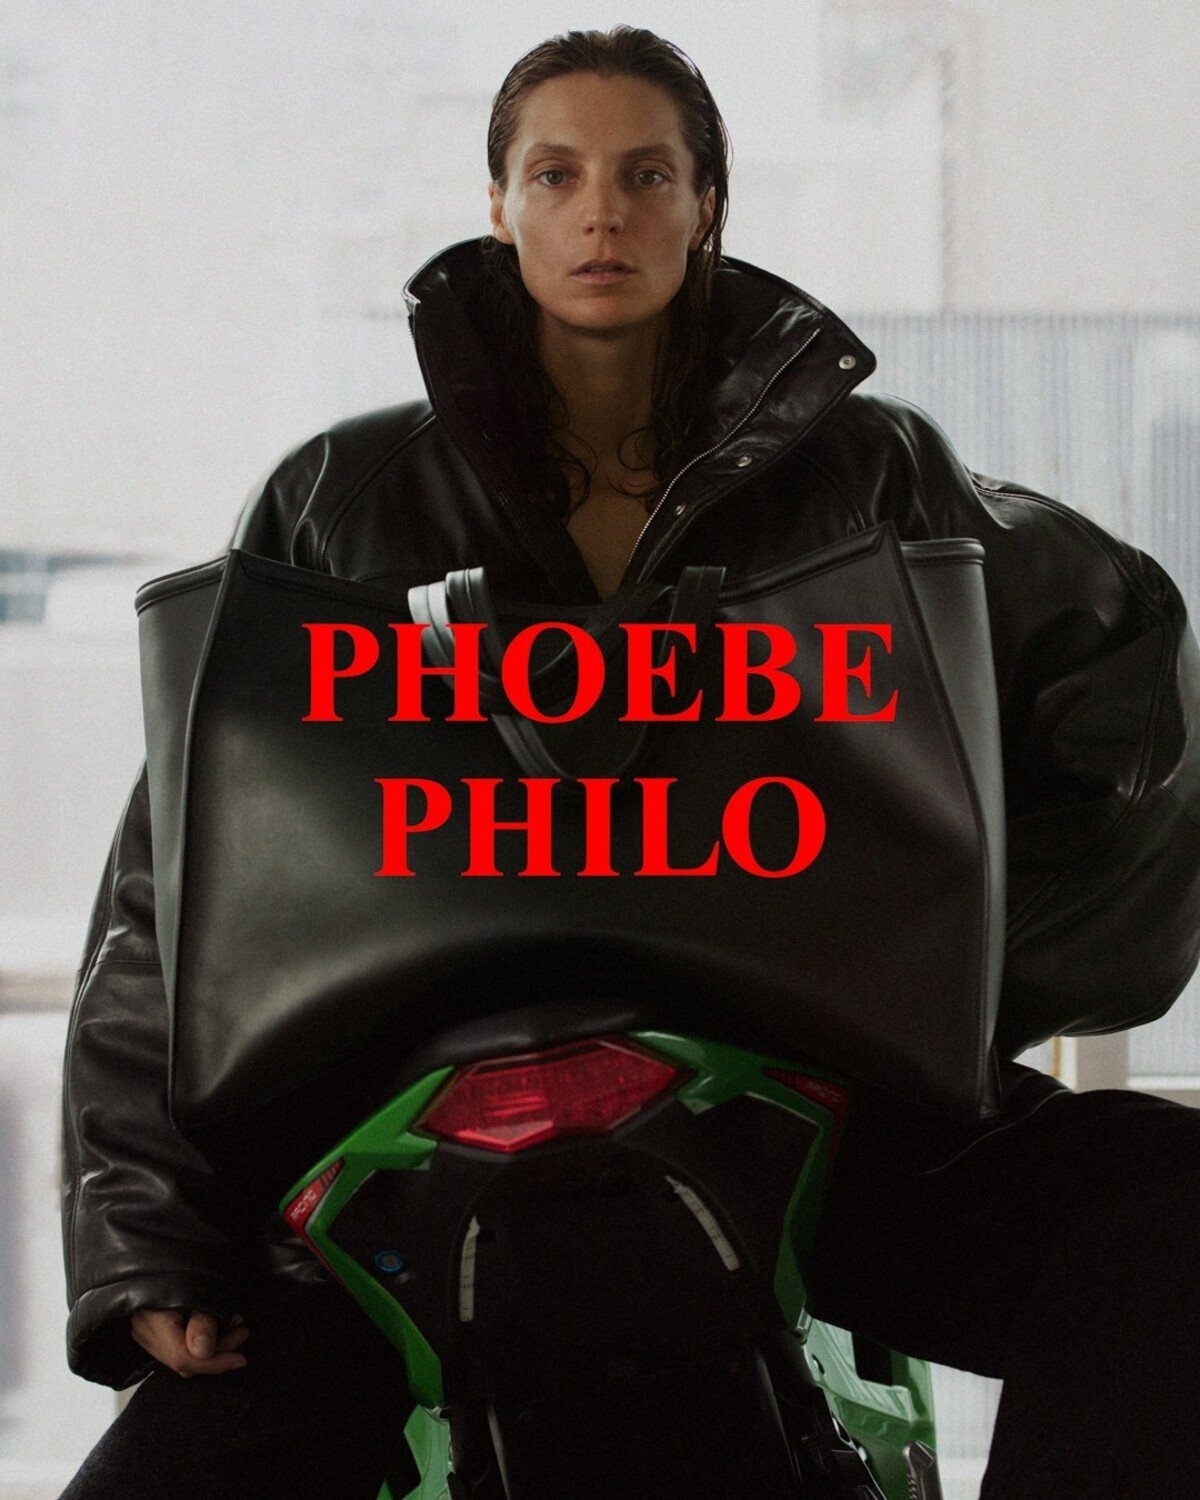 Uznávaná módna návrhárka Phoebe Philo predstavila svoju debutovú kolekciu pod hlavičkou rovnomennej značky.